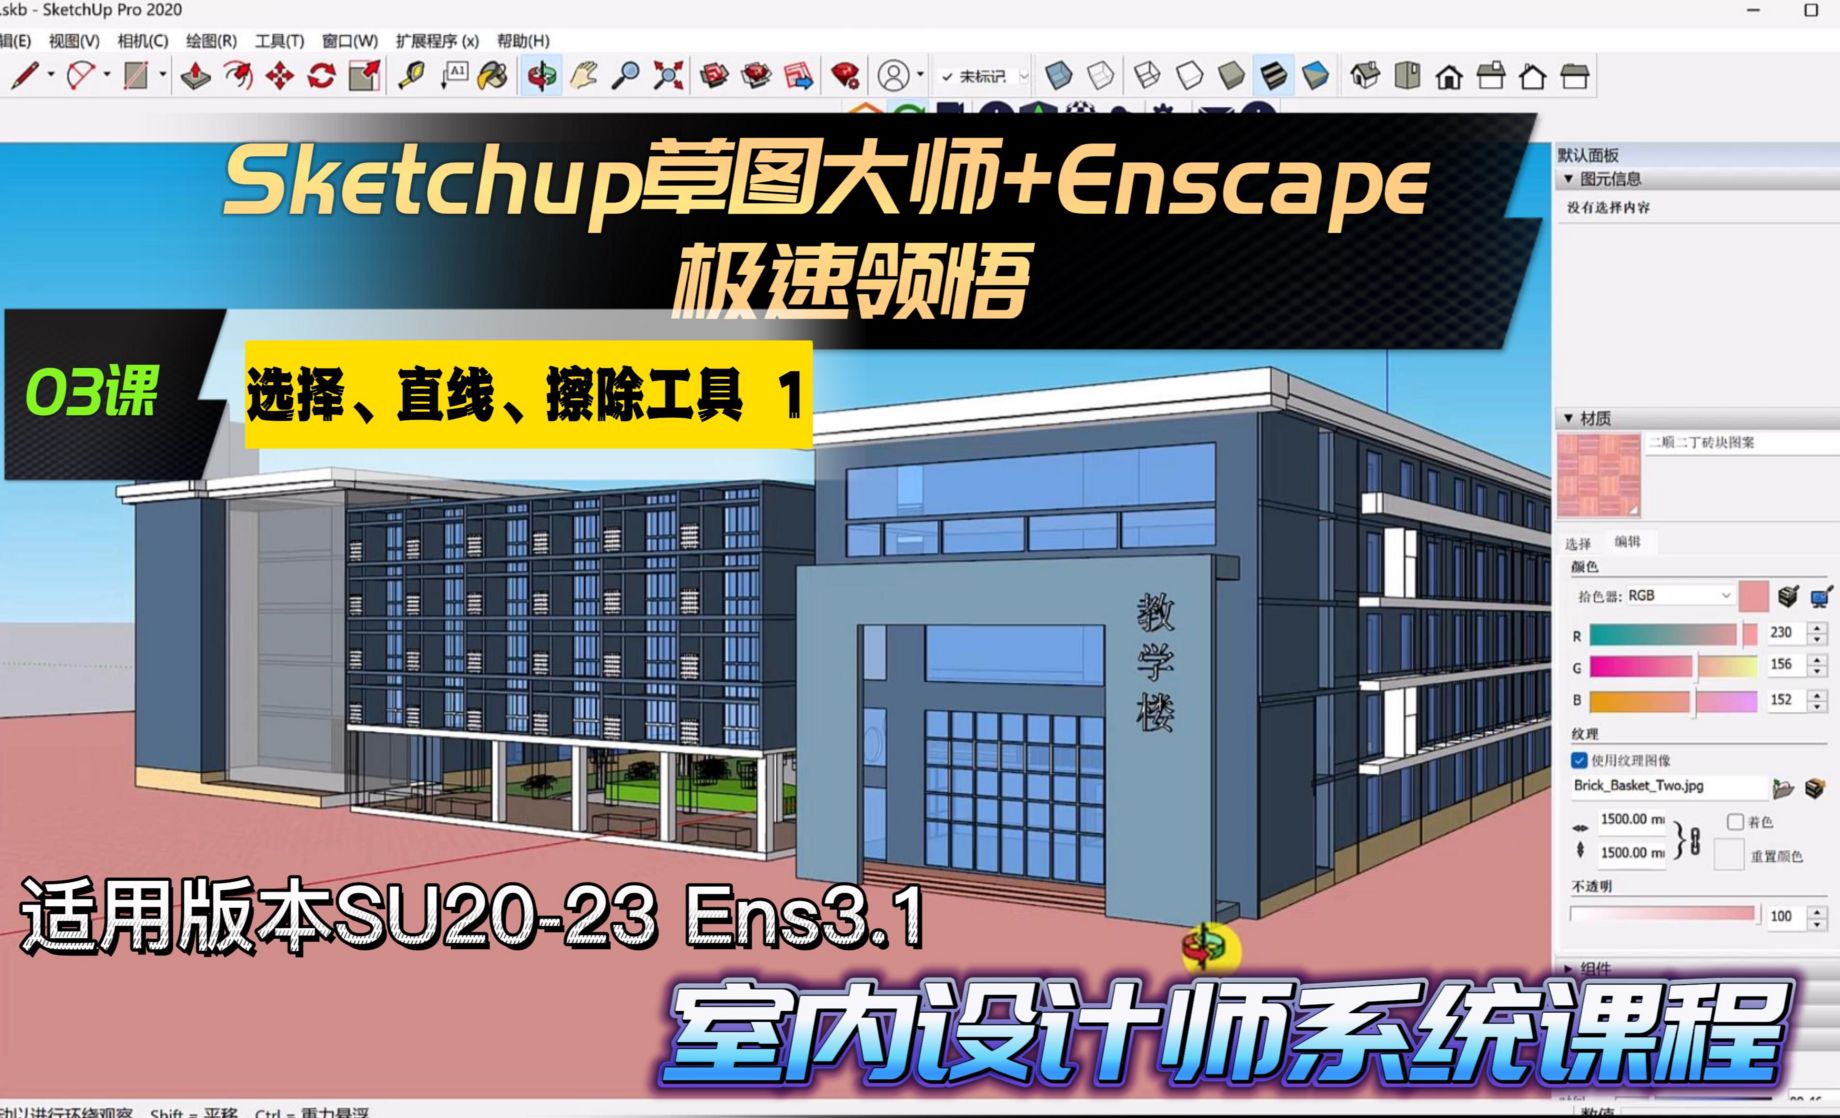 Sketchup+Enscape室内设计极速领悟-选择/直线/擦除工具1